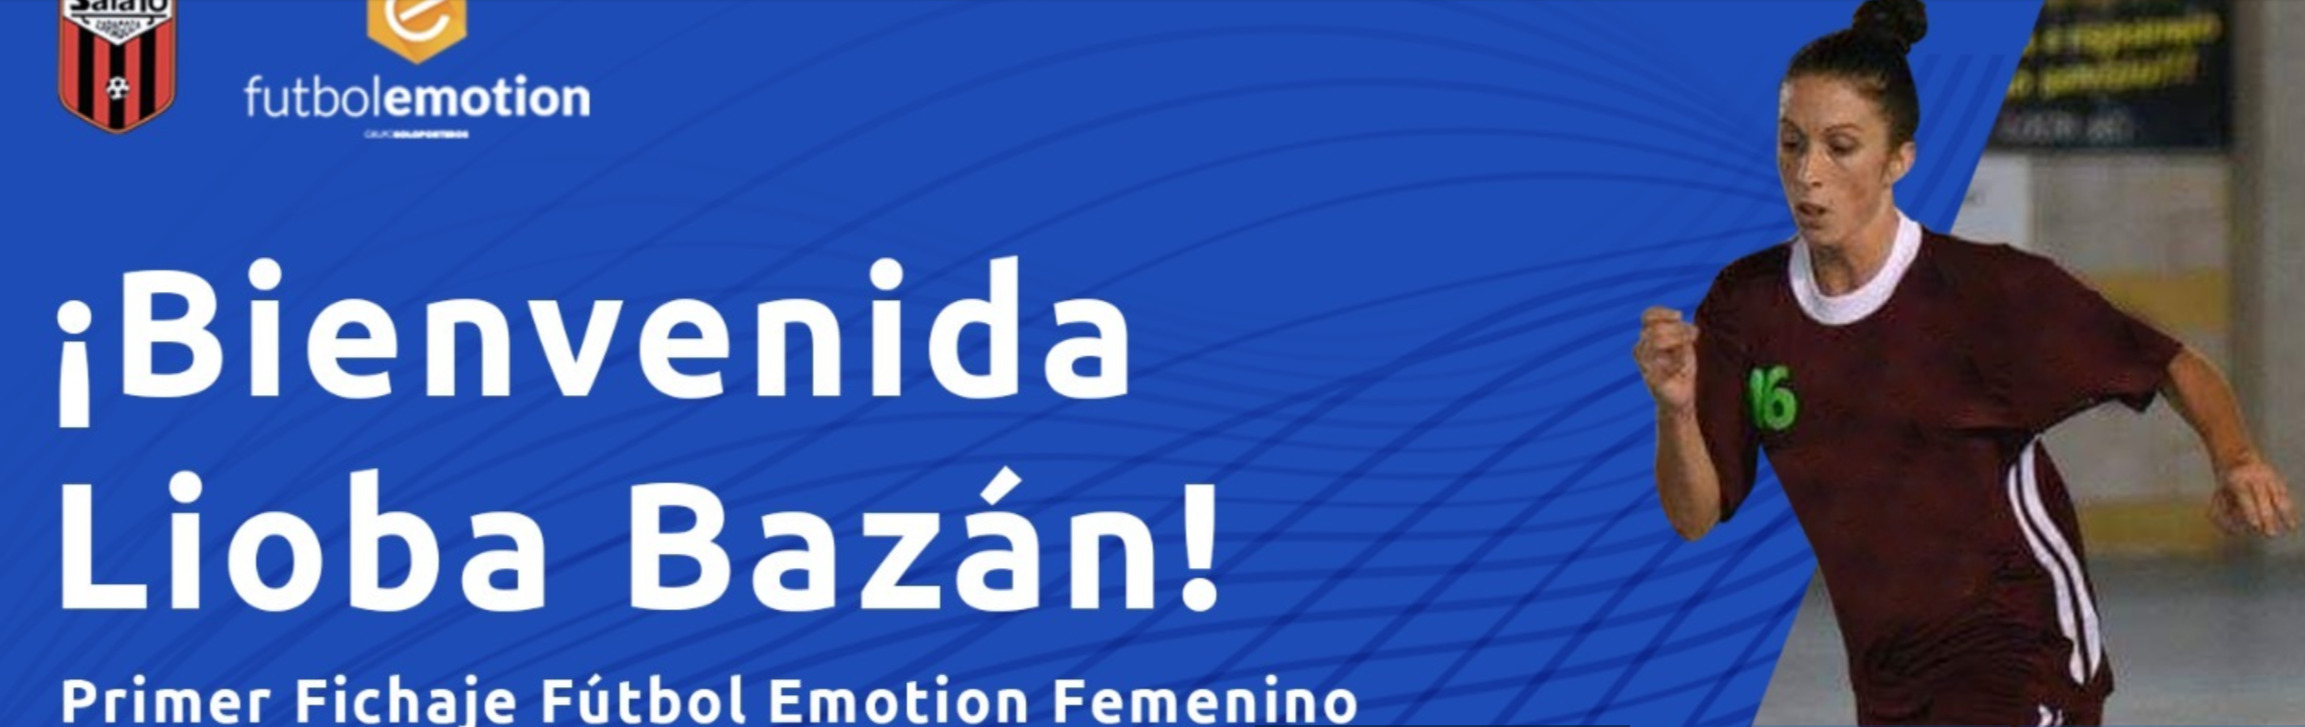 Principio de acuerdo con Lioba Bazán para que lidere al Fútbol Emotion Zaragoza